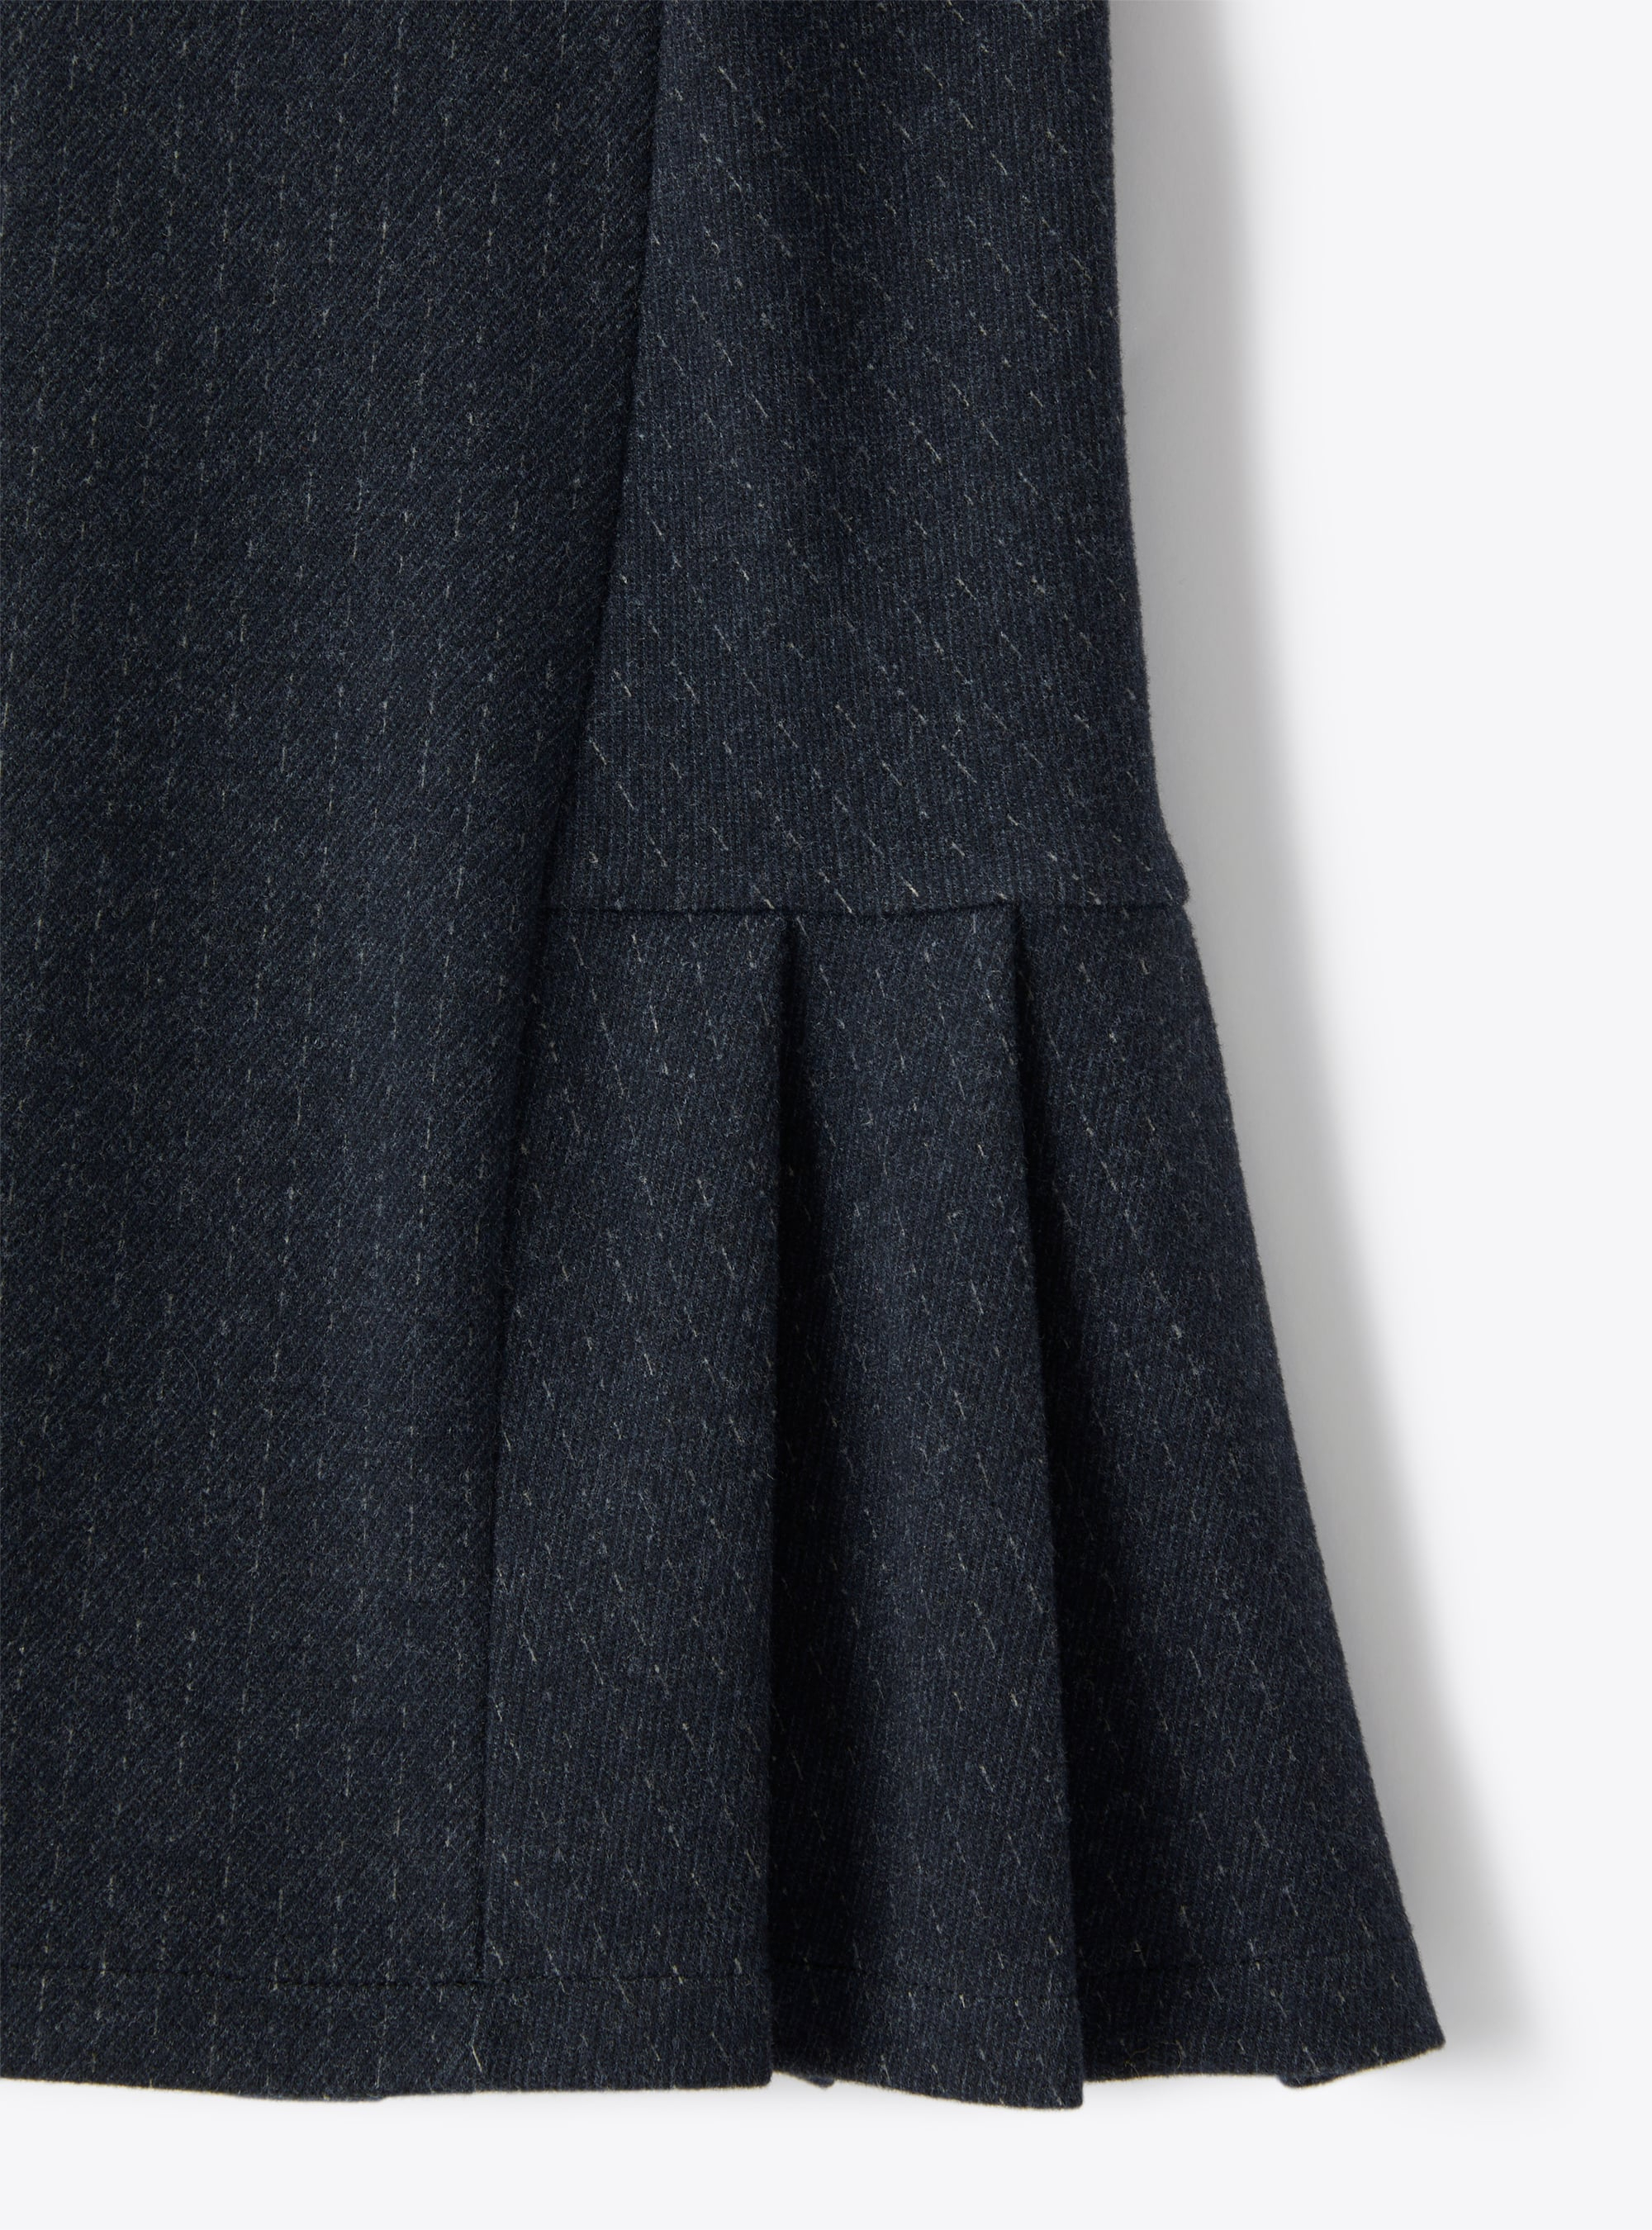 Sleeveless blue dress in a pinstripe pattern - Blue | Il Gufo